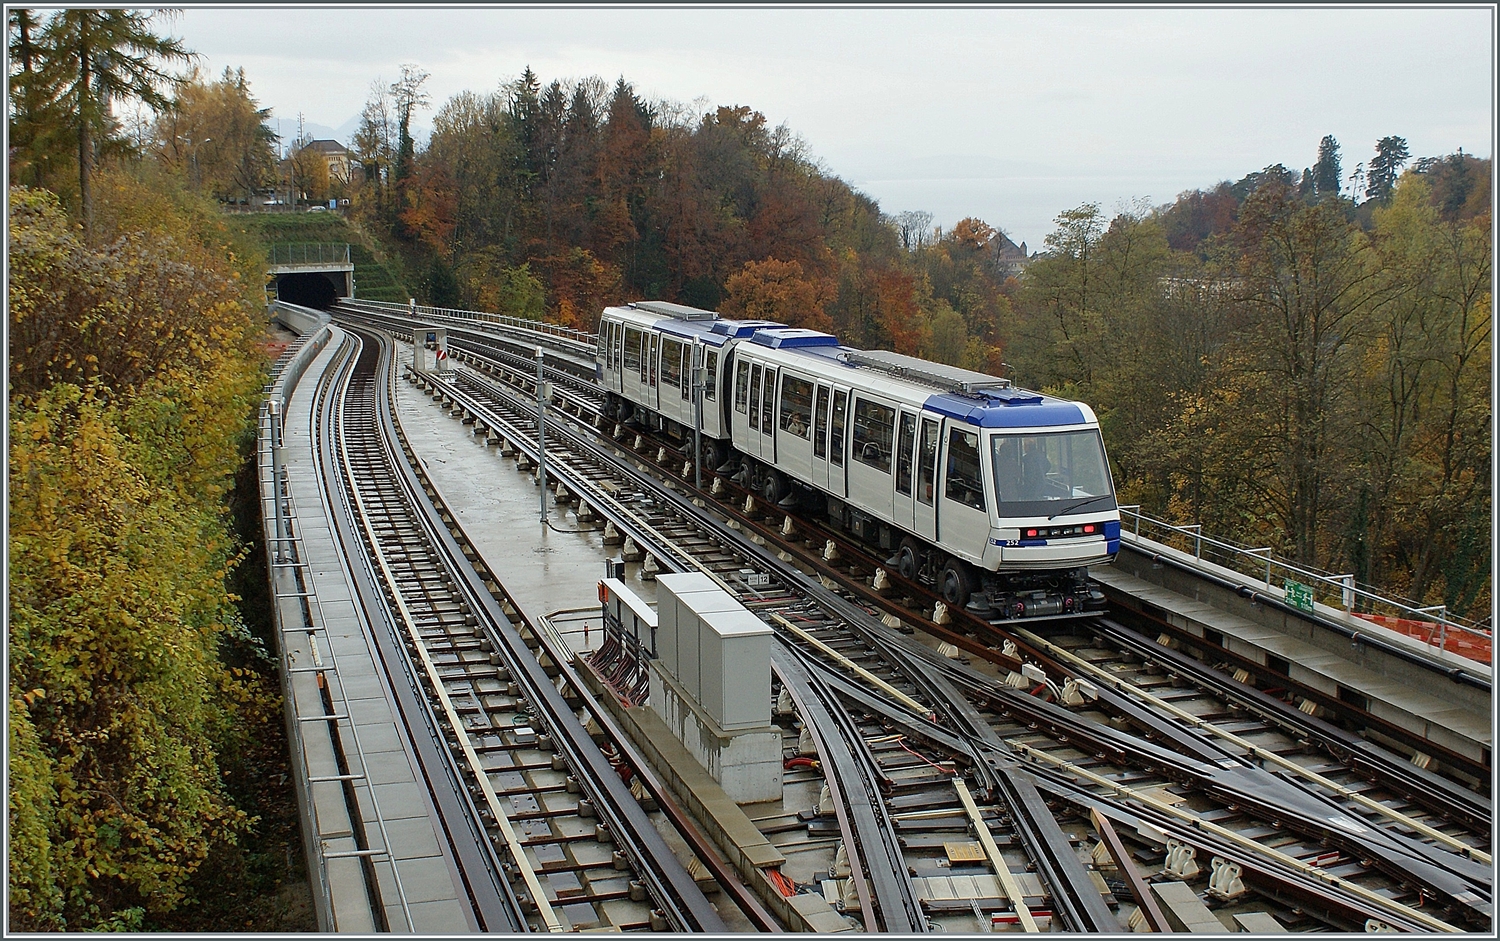 Der TL Be 8/8 252 der Linie M2 bei der Haltestelle La Sallaz, wo die Gleisanlagen auch ein Abstellen der Züge erlauben. Zudem wenden einige Züge hier.

9. November 2008 